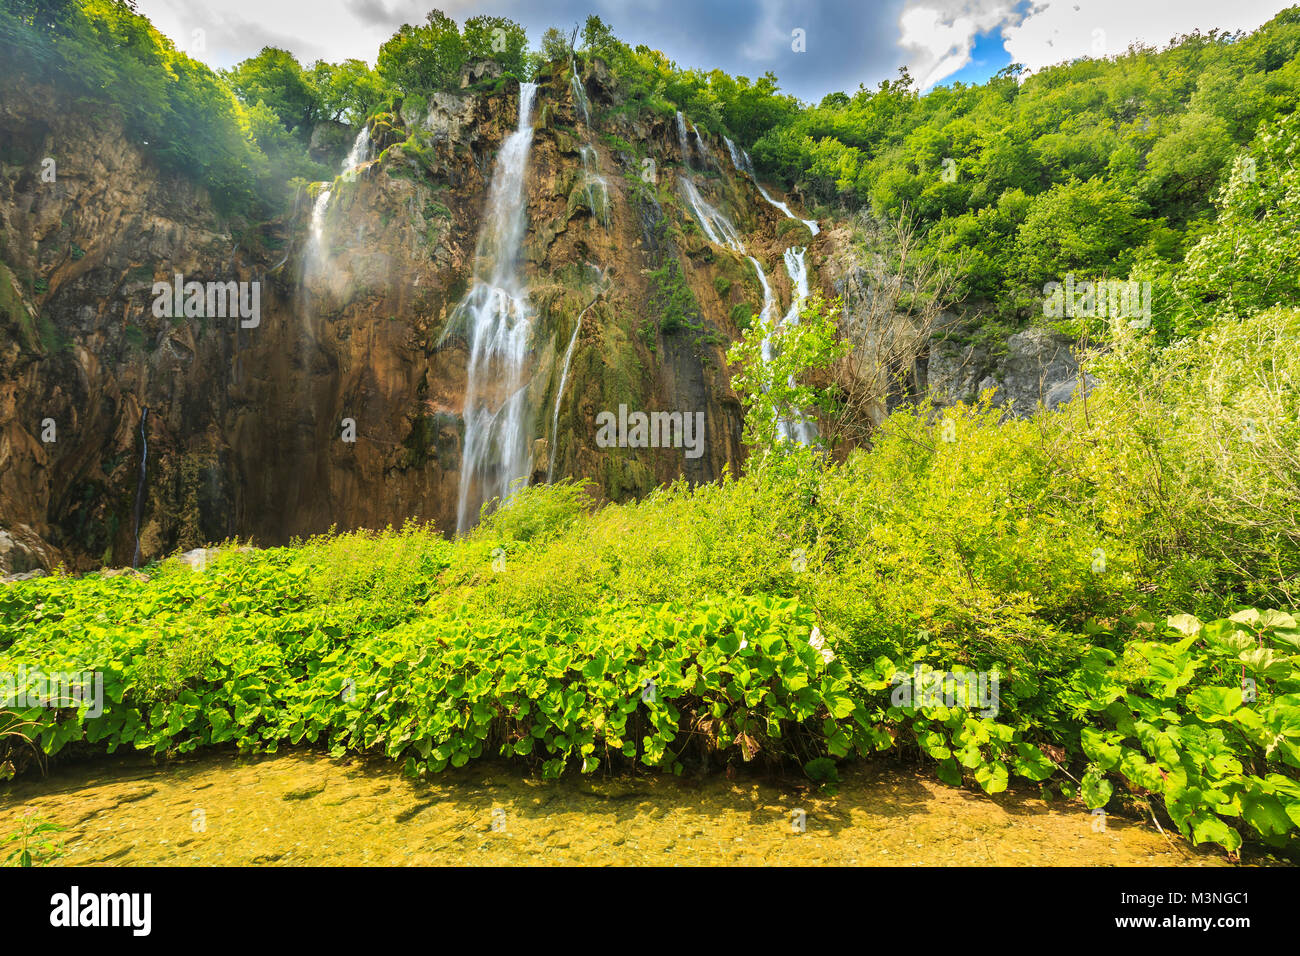 Close up of blue cascades dans une forêt verte pendant la journée en été.Les lacs de Plitvice, Croatie Banque D'Images